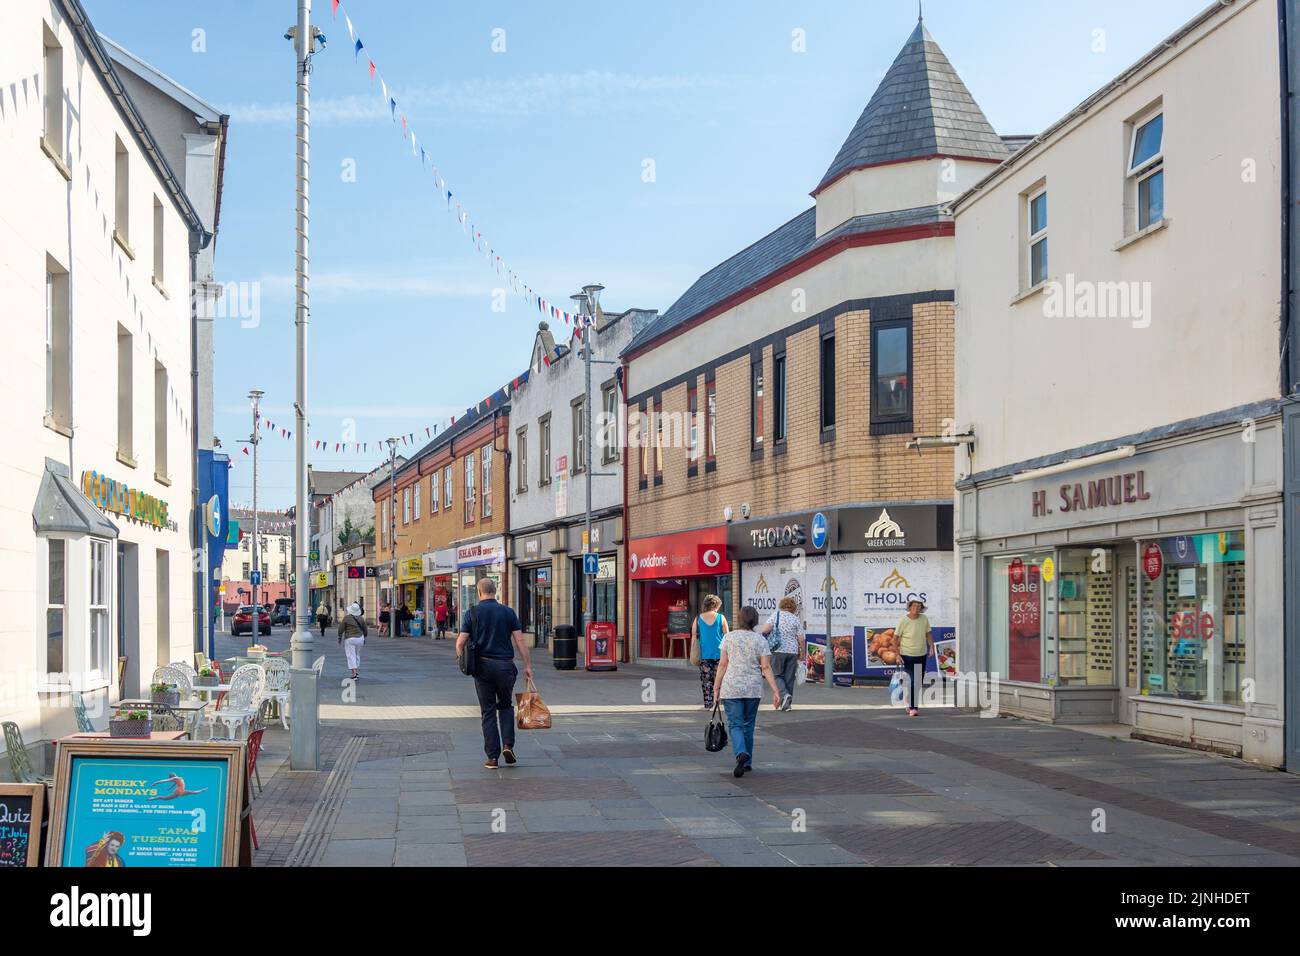 Adare Street, Bridgend (Pen-y-bont ar Ogwr), Bridgend County Borough, Wales (Cymru), United Kingdom Stock Photo